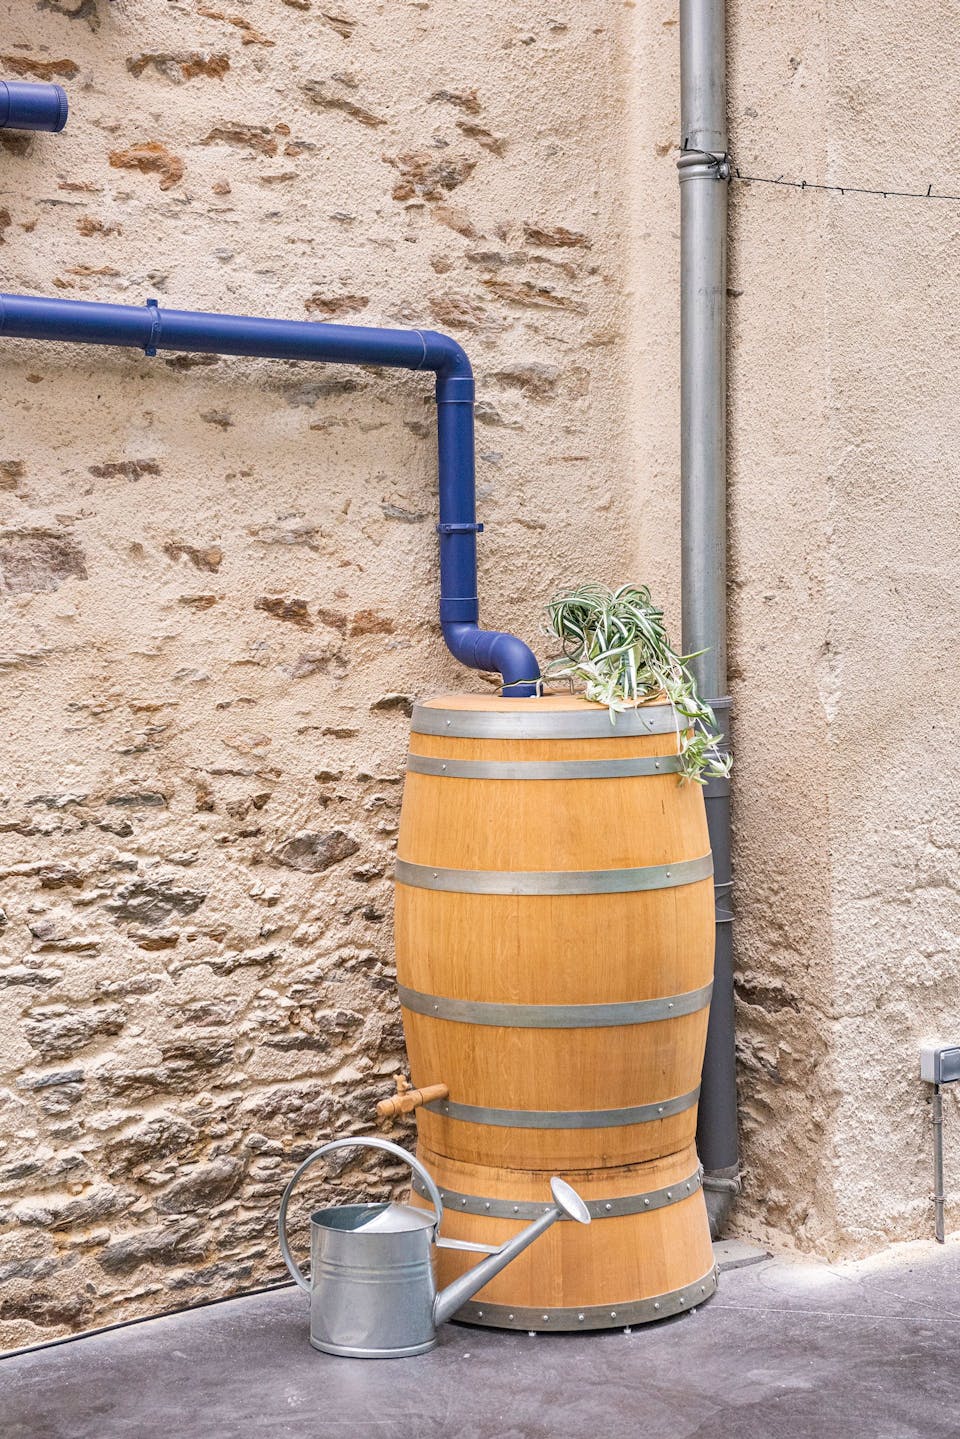 Le récupérateur d'eau des locaux de Valeuriad, pensé par l'agence de design Studio Katra, dont la gouttière s'achève au dessus d'un baril.